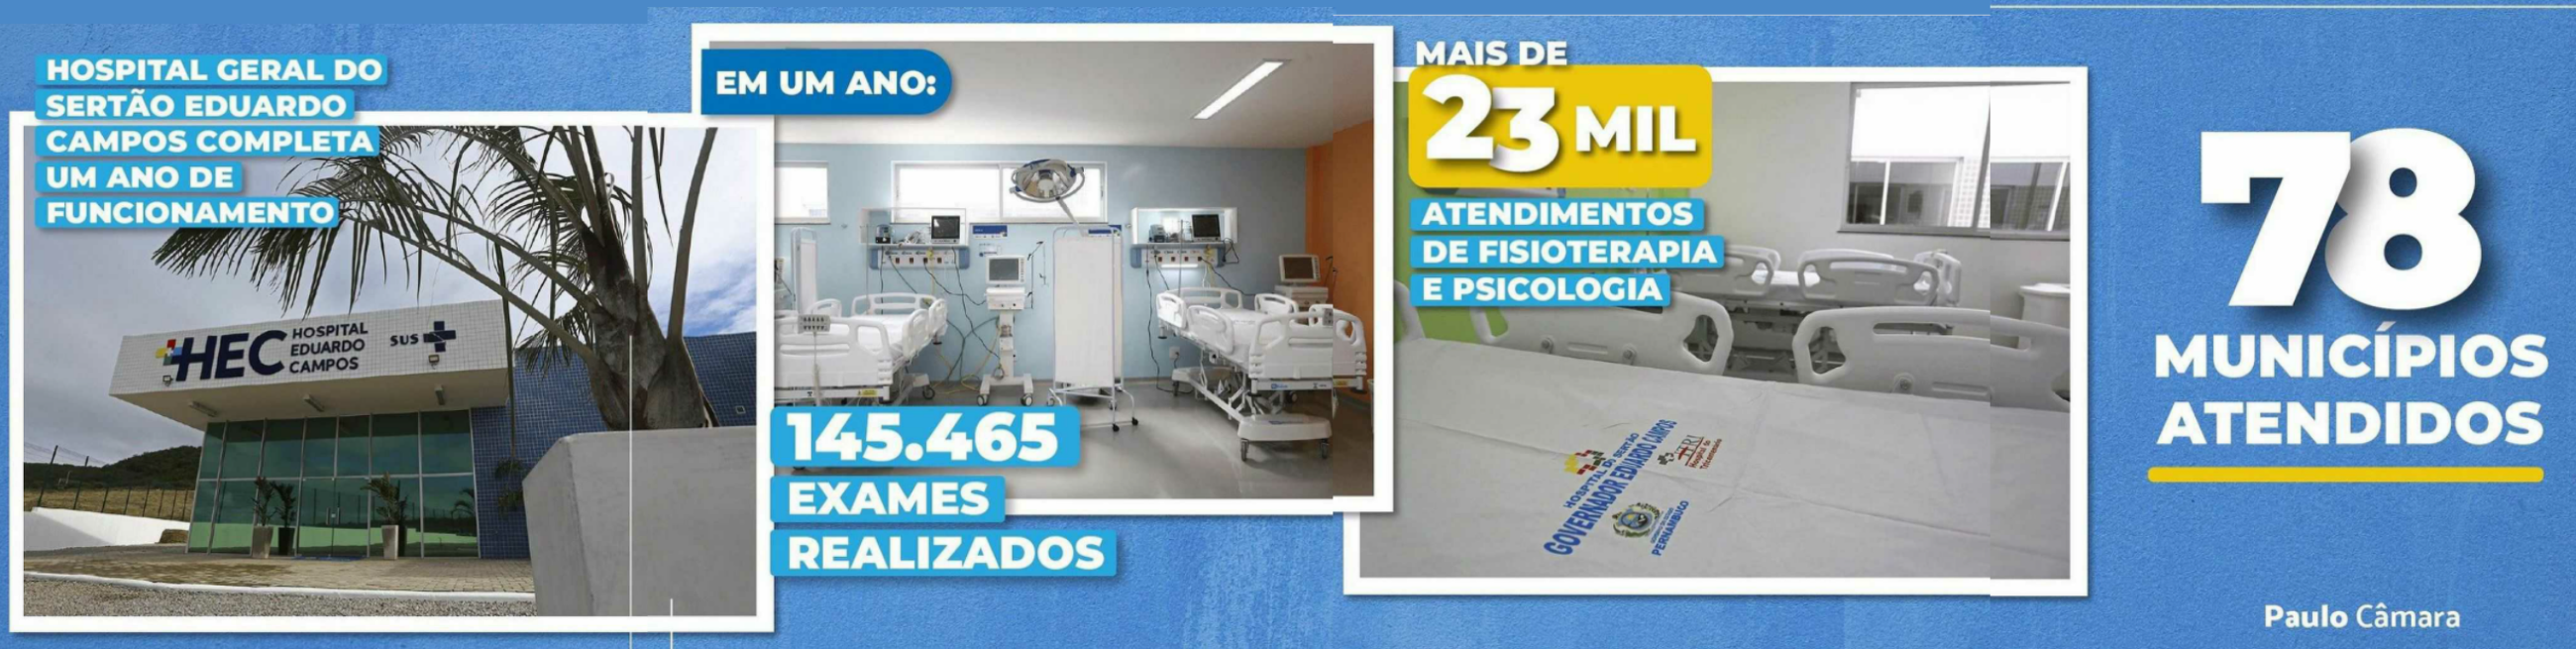 Hospital Eduardo Campos - 1 ano